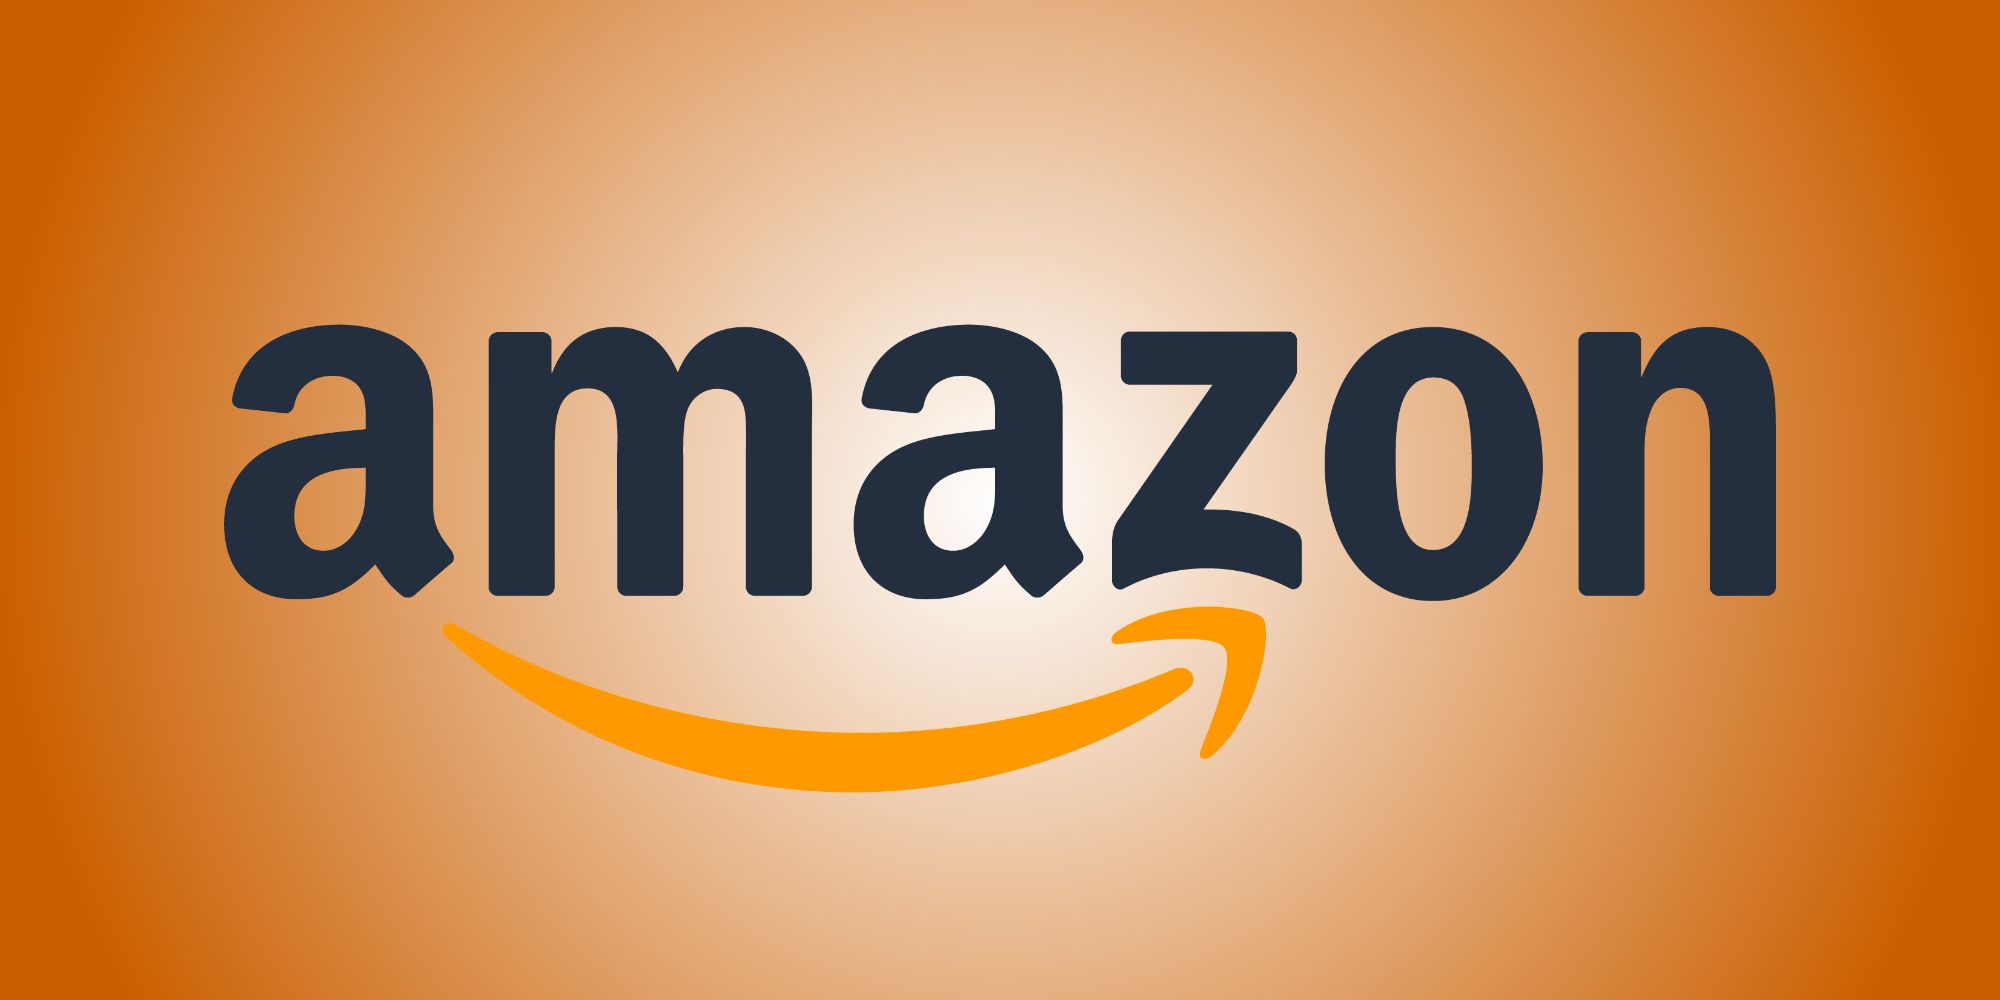 Amazon logo against an orange background